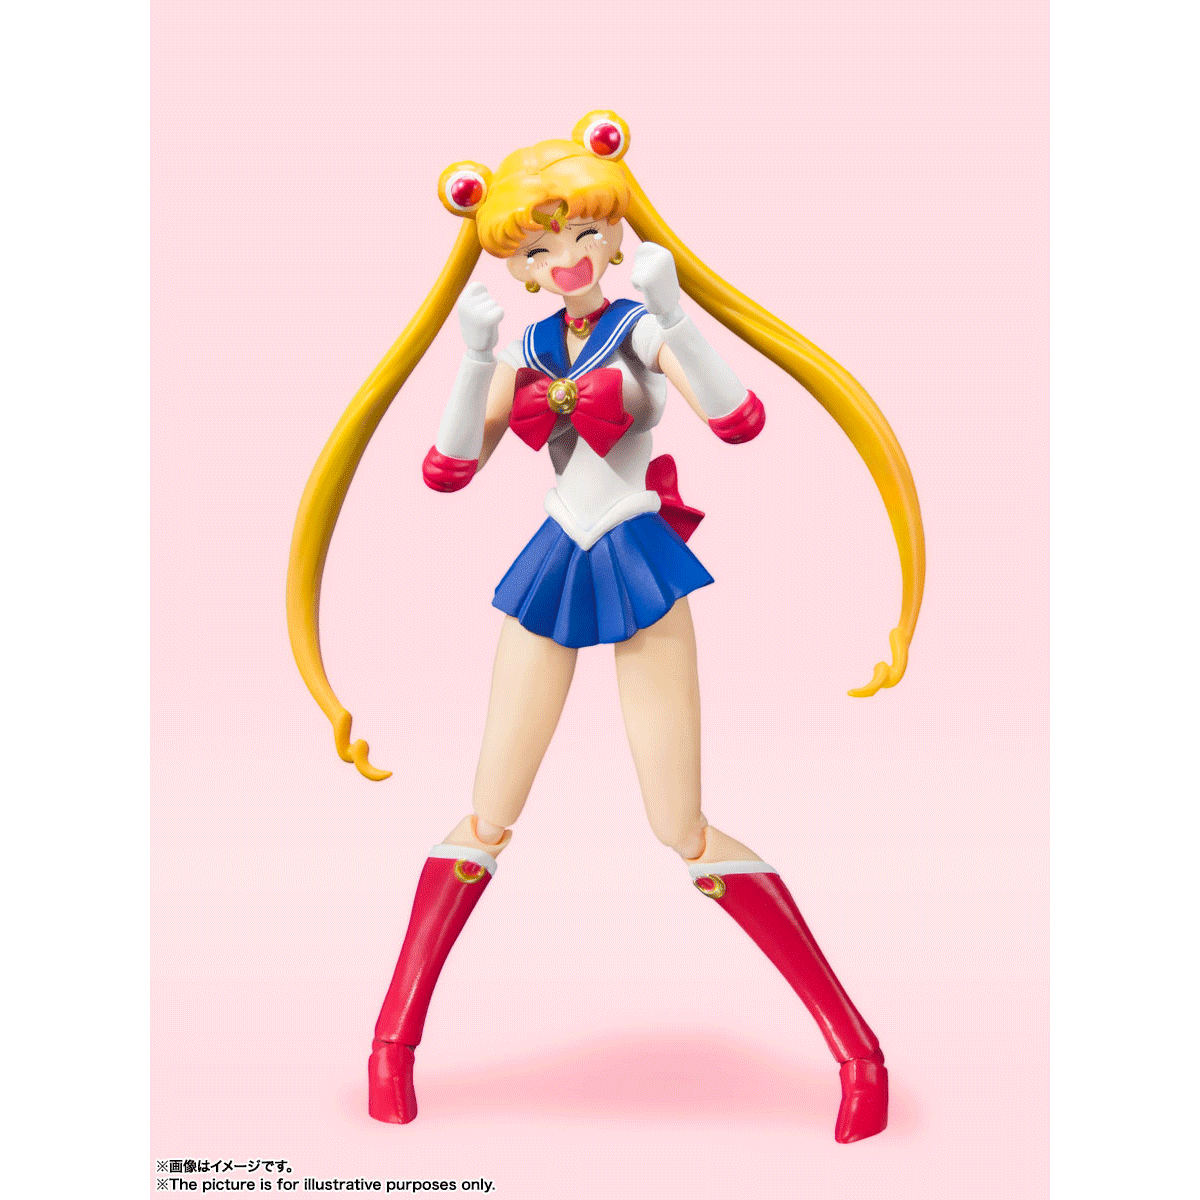 Sailor Moon: Sailor Moon & Luna [Animation Colour Ver.] S.H. Figuarts